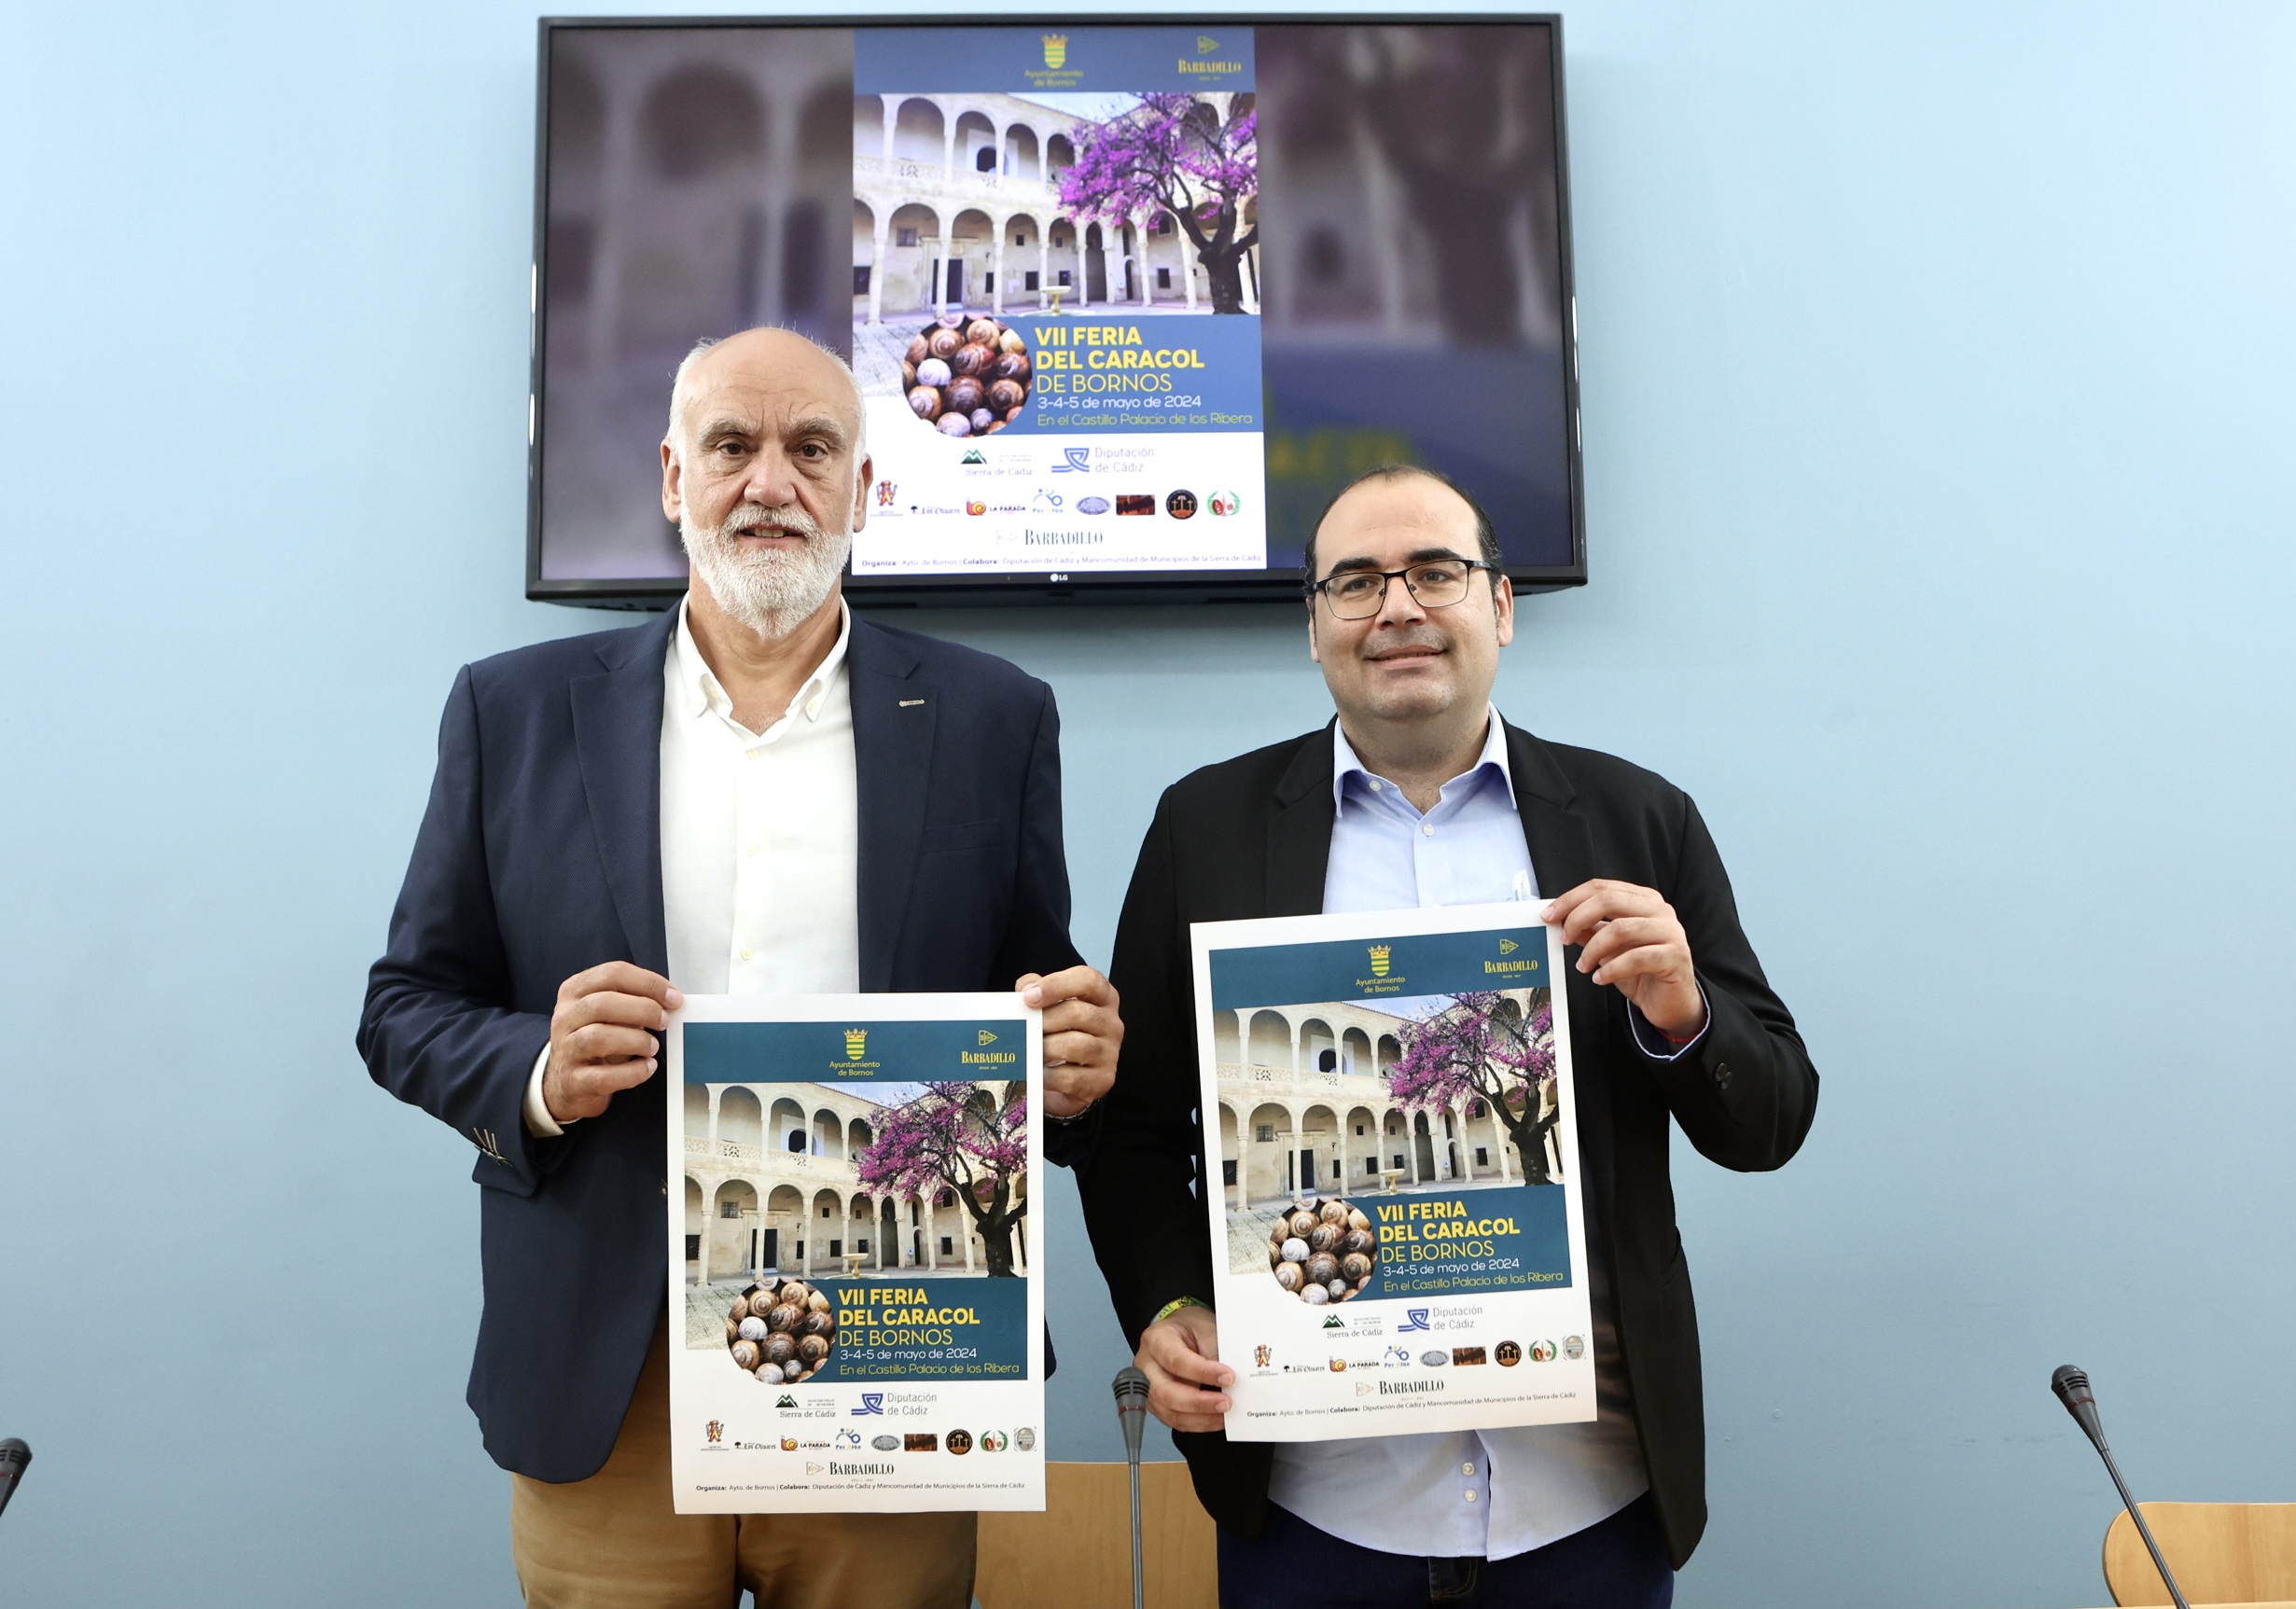 Javier Vidal y Hugo Palomares presentan la Feria del Caracol de Bornos